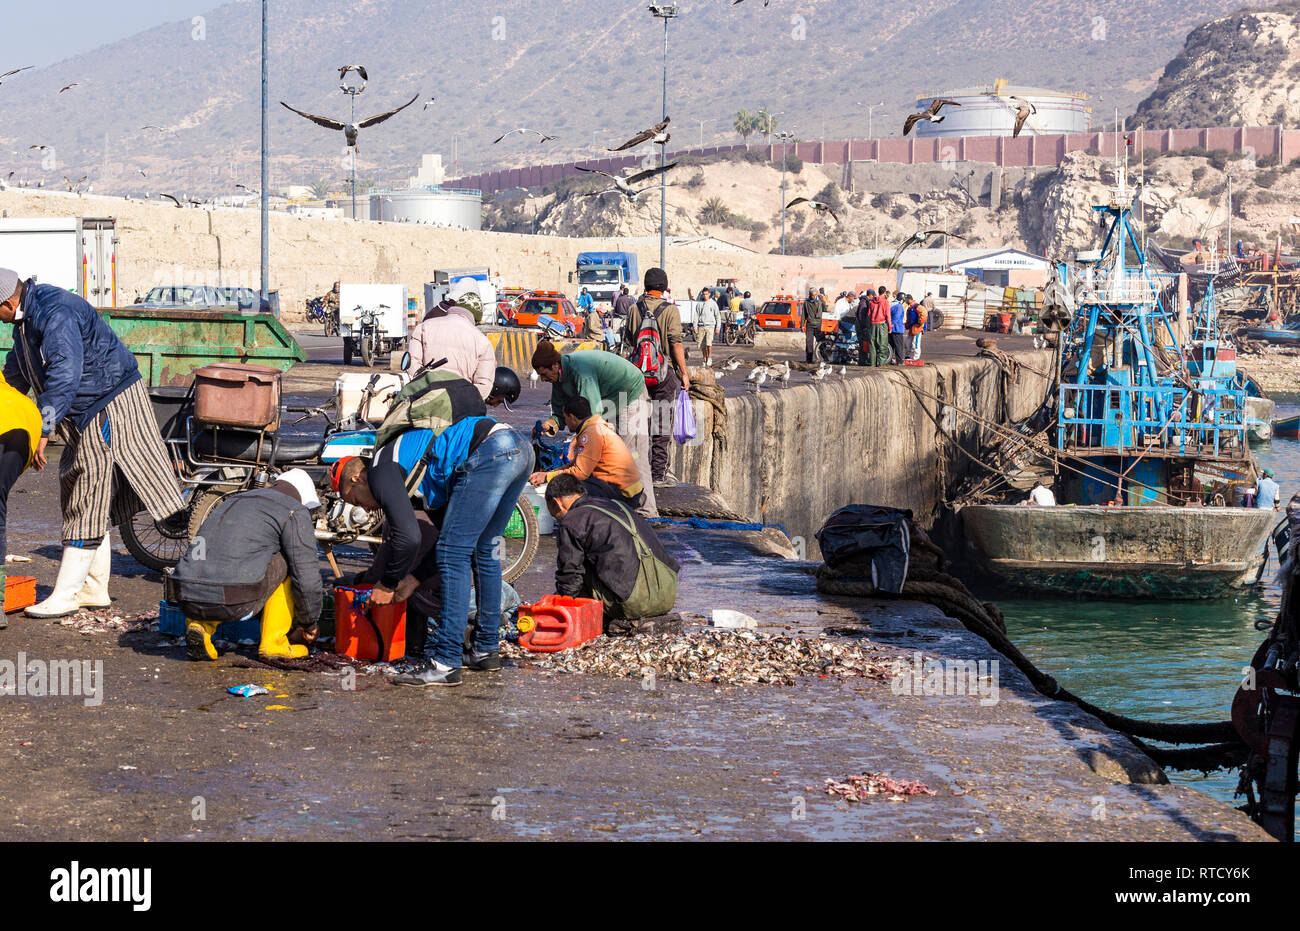 Port de marché aux poissons en plein air d'Agadir.Le poisson est éviscéré et offerts en vente sur le quai en face. Le courage de poissons sont rejetés sur le quai pour être récupéré Banque D'Images